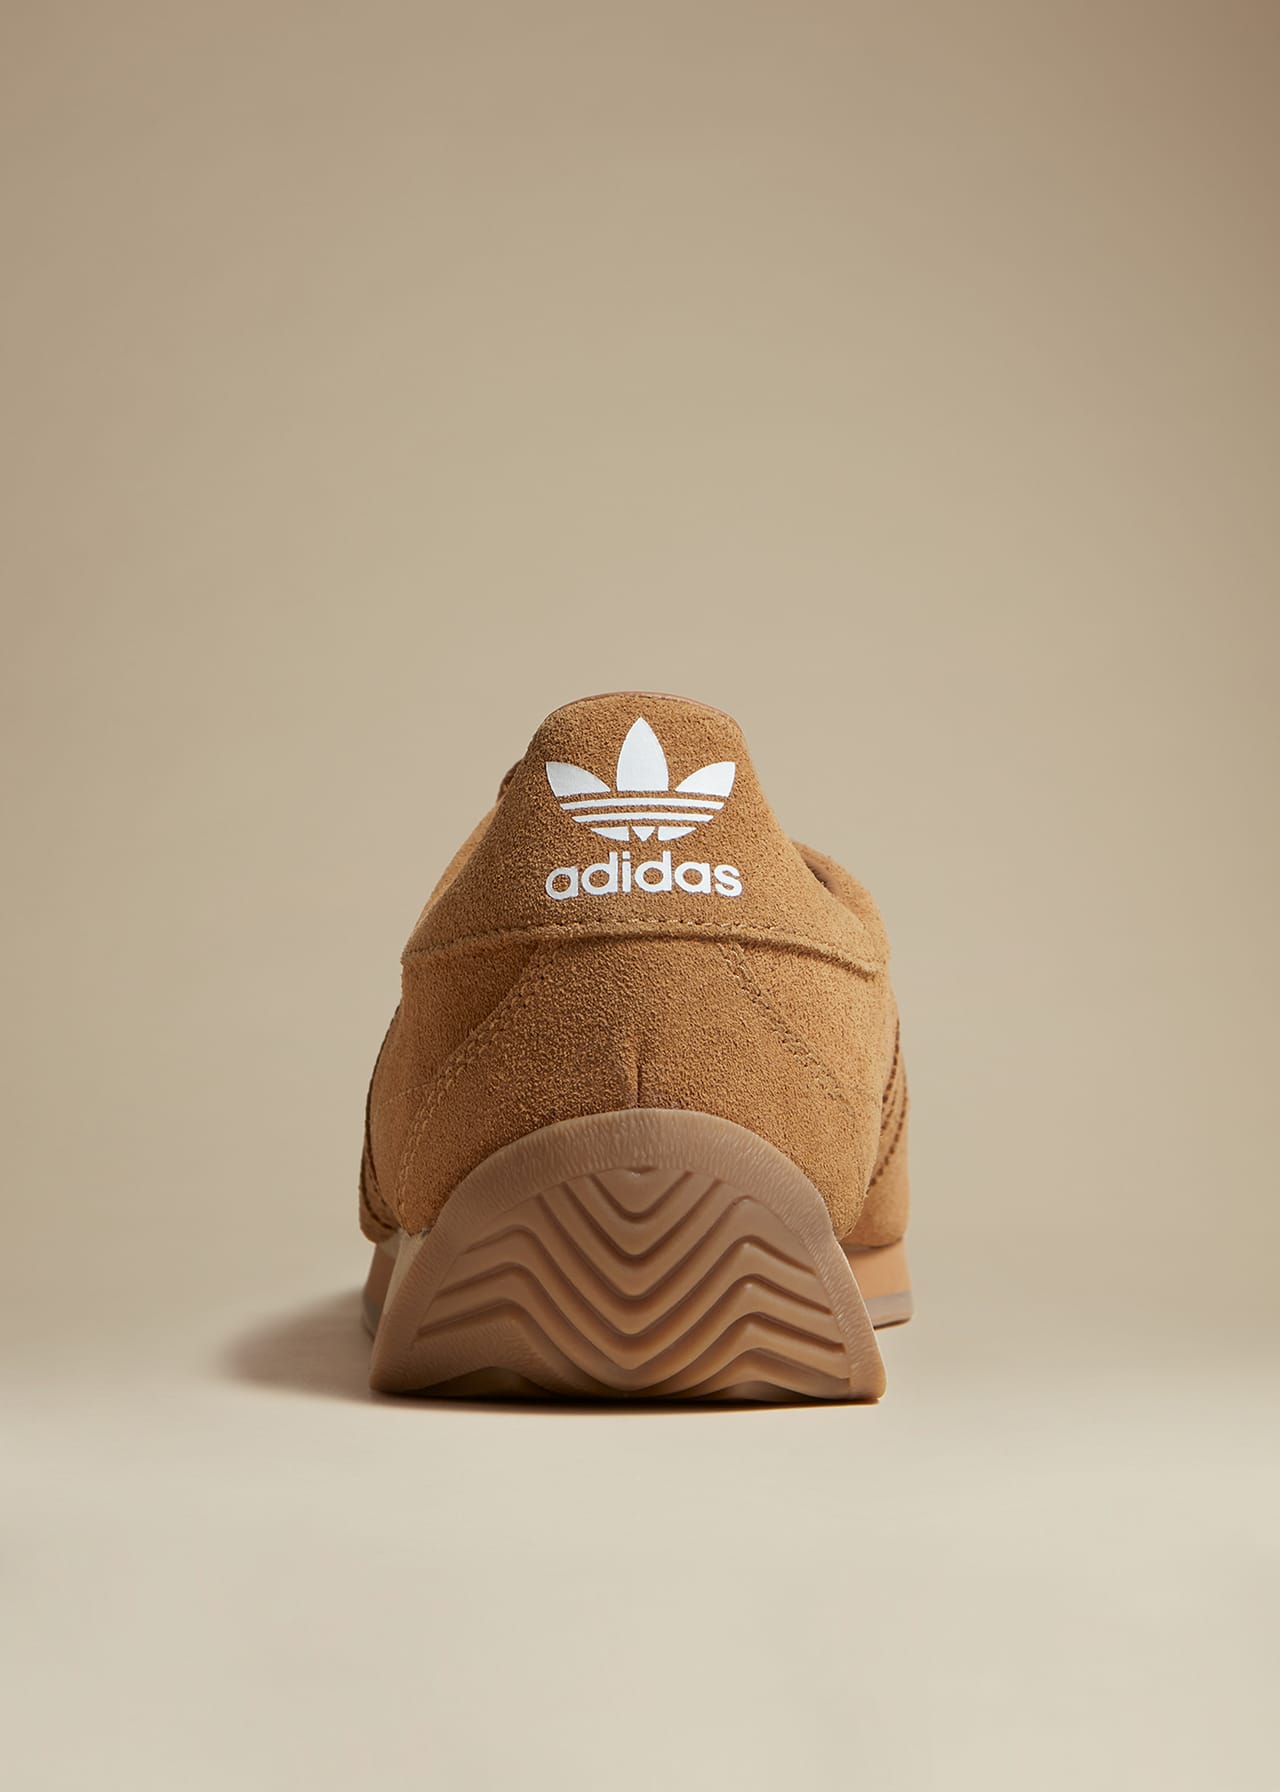 Khaite x adidas Originals Sneaker Camel 